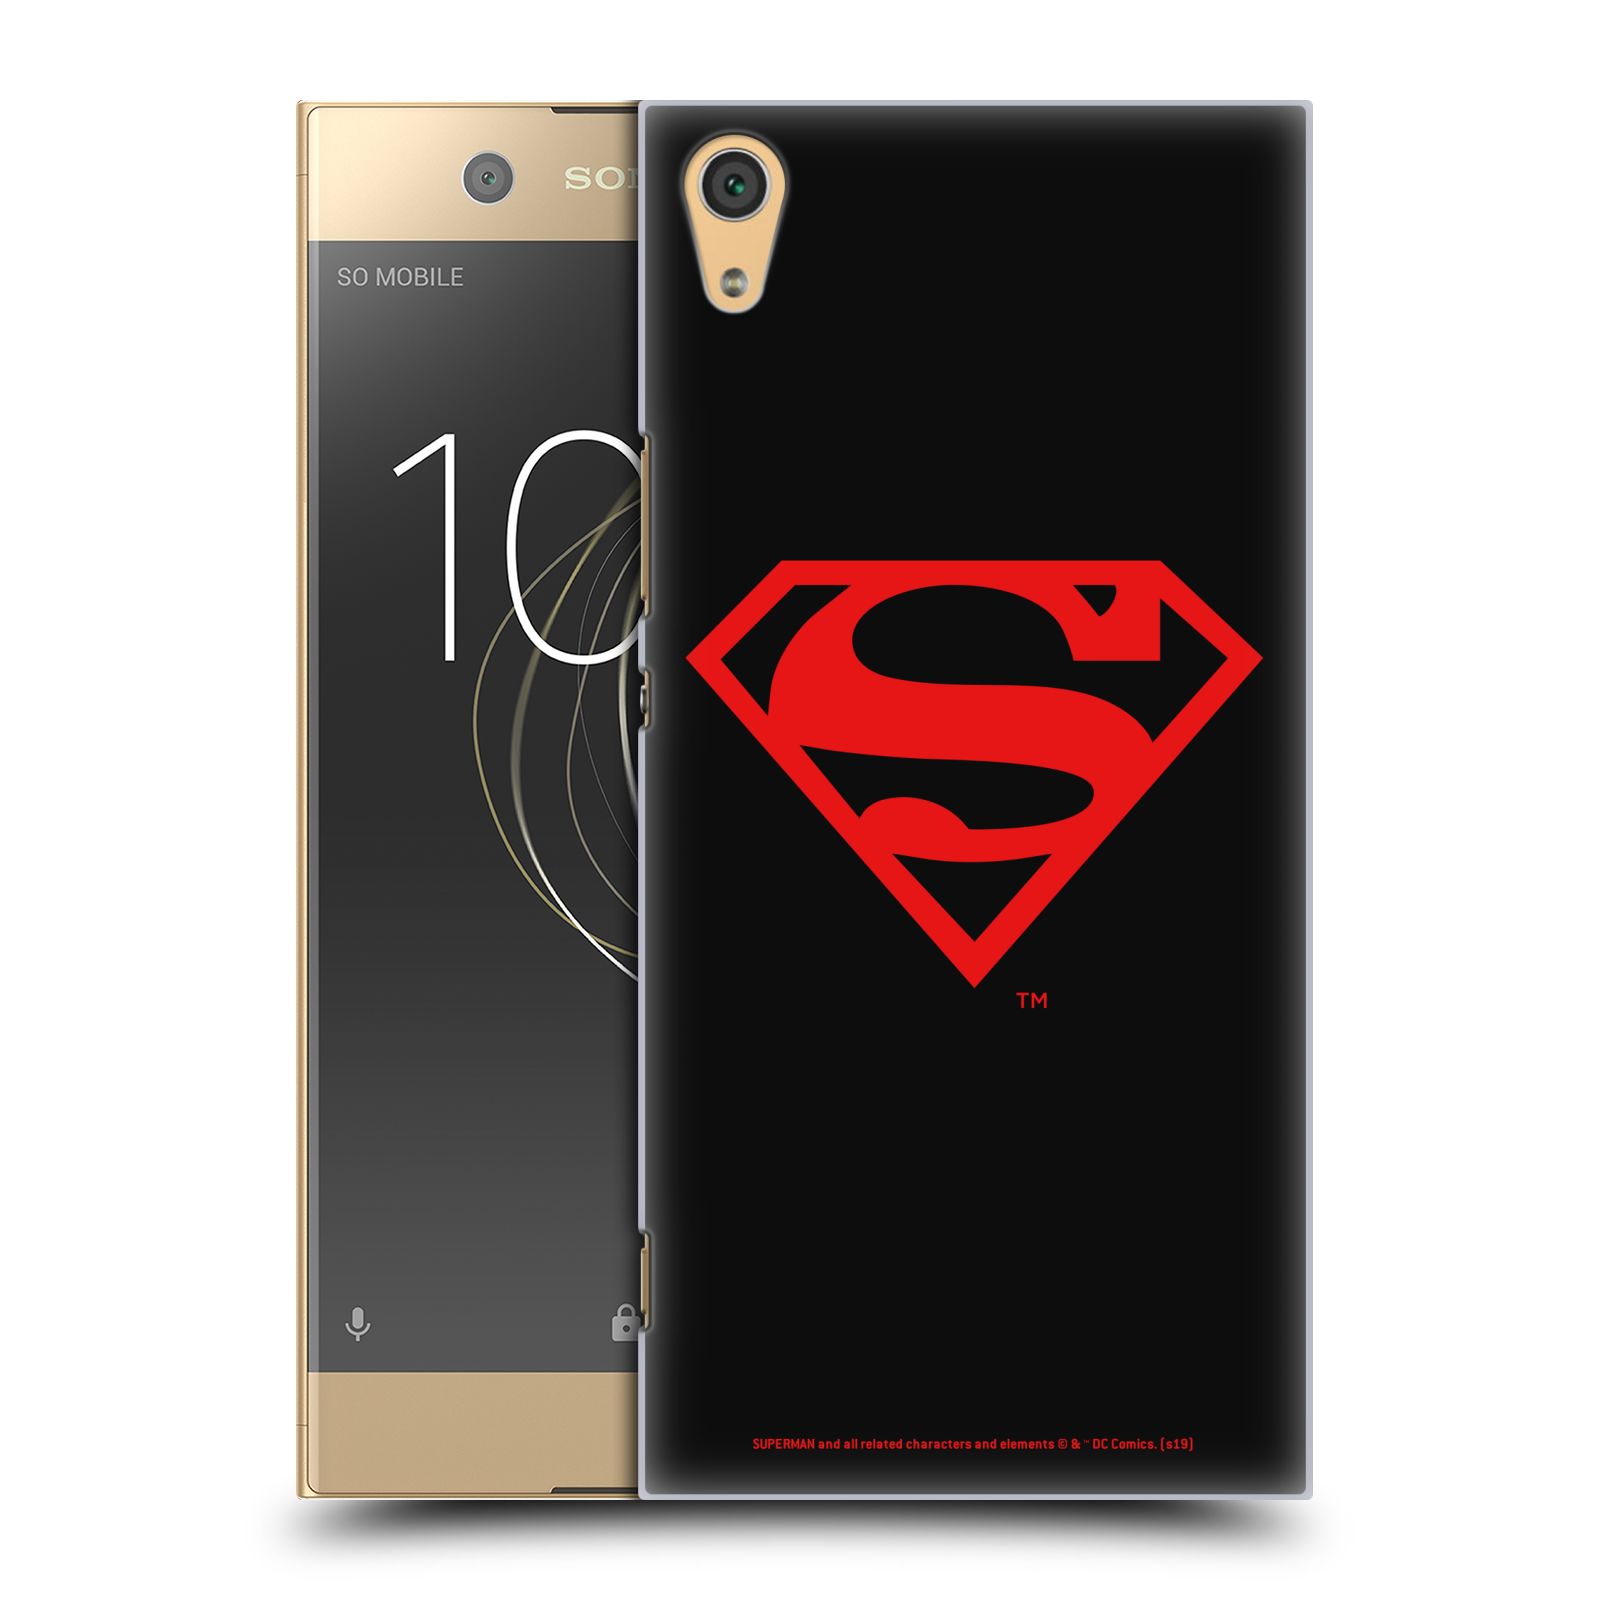 Pouzdro na mobil Sony Xperia XA1 ULTRA - HEAD CASE - DC komix Superman červený znak černé pozadí